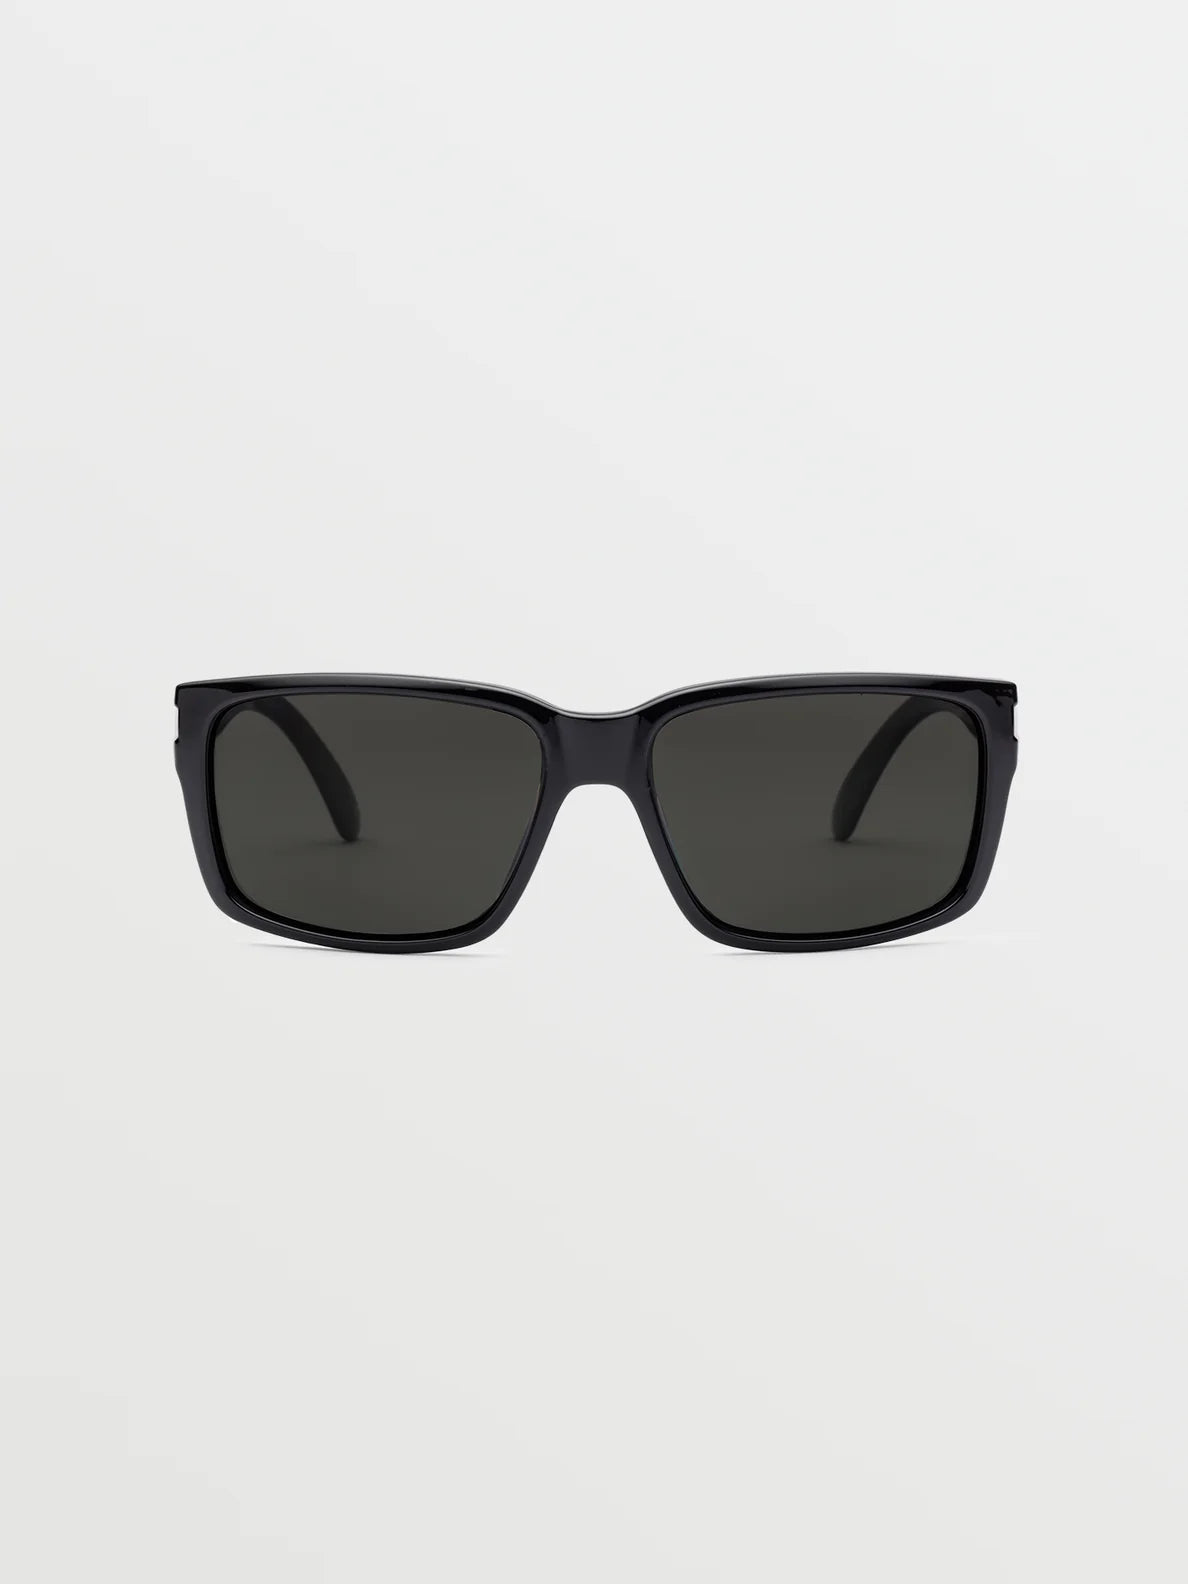 Volcom glänzend schwarz/graue Polarbrille | Meistverkaufte Produkte | Neue Produkte | Neueste Produkte | surfdevils.com